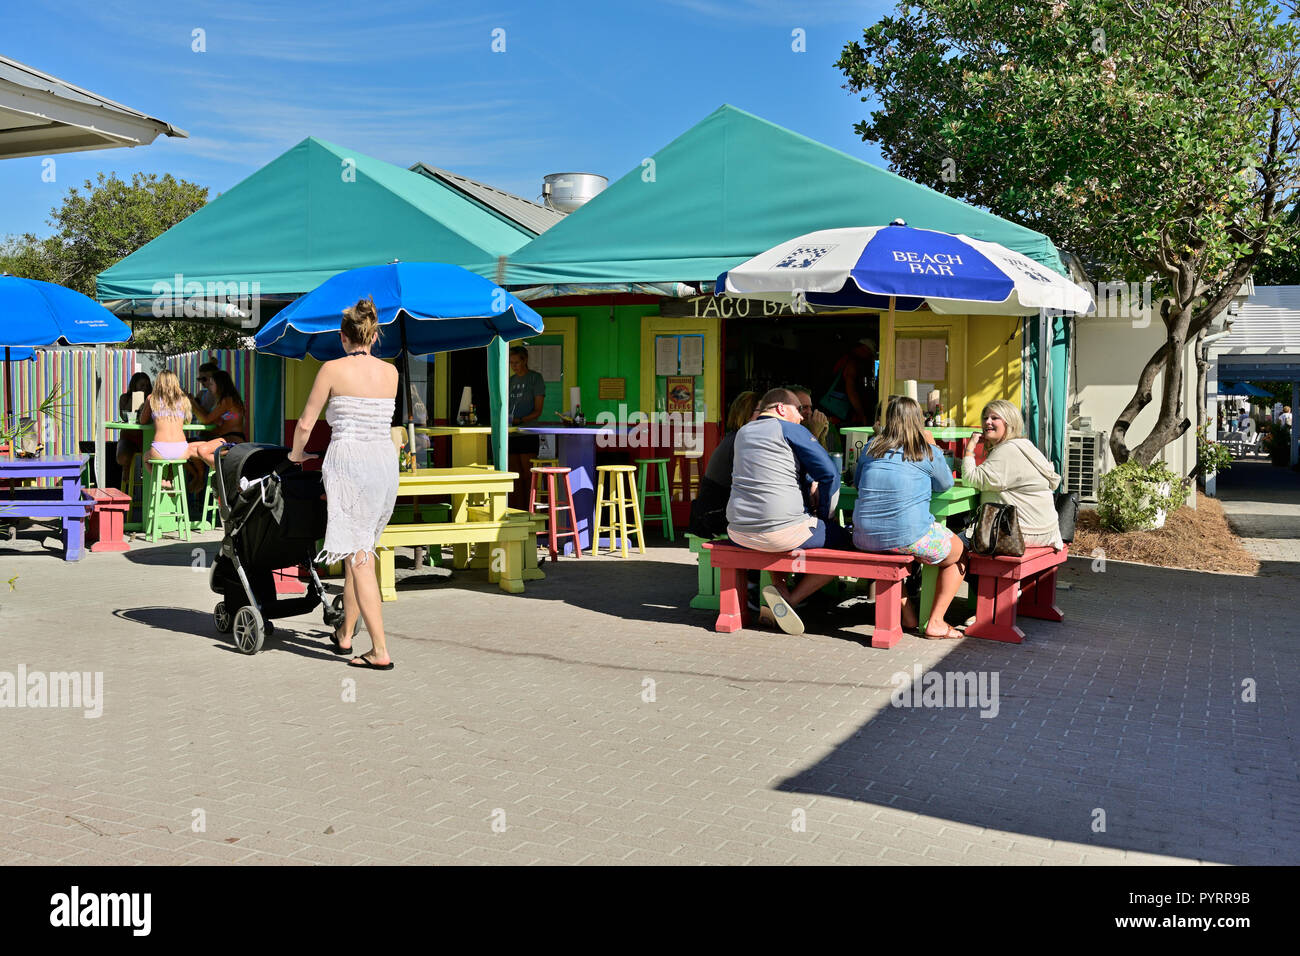 La famille, les jeunes filles et une mère avec une poussette à une une piscine Taco Bar restaurant dans la ville de villégiature de Seaside en Floride, aux États-Unis. Banque D'Images